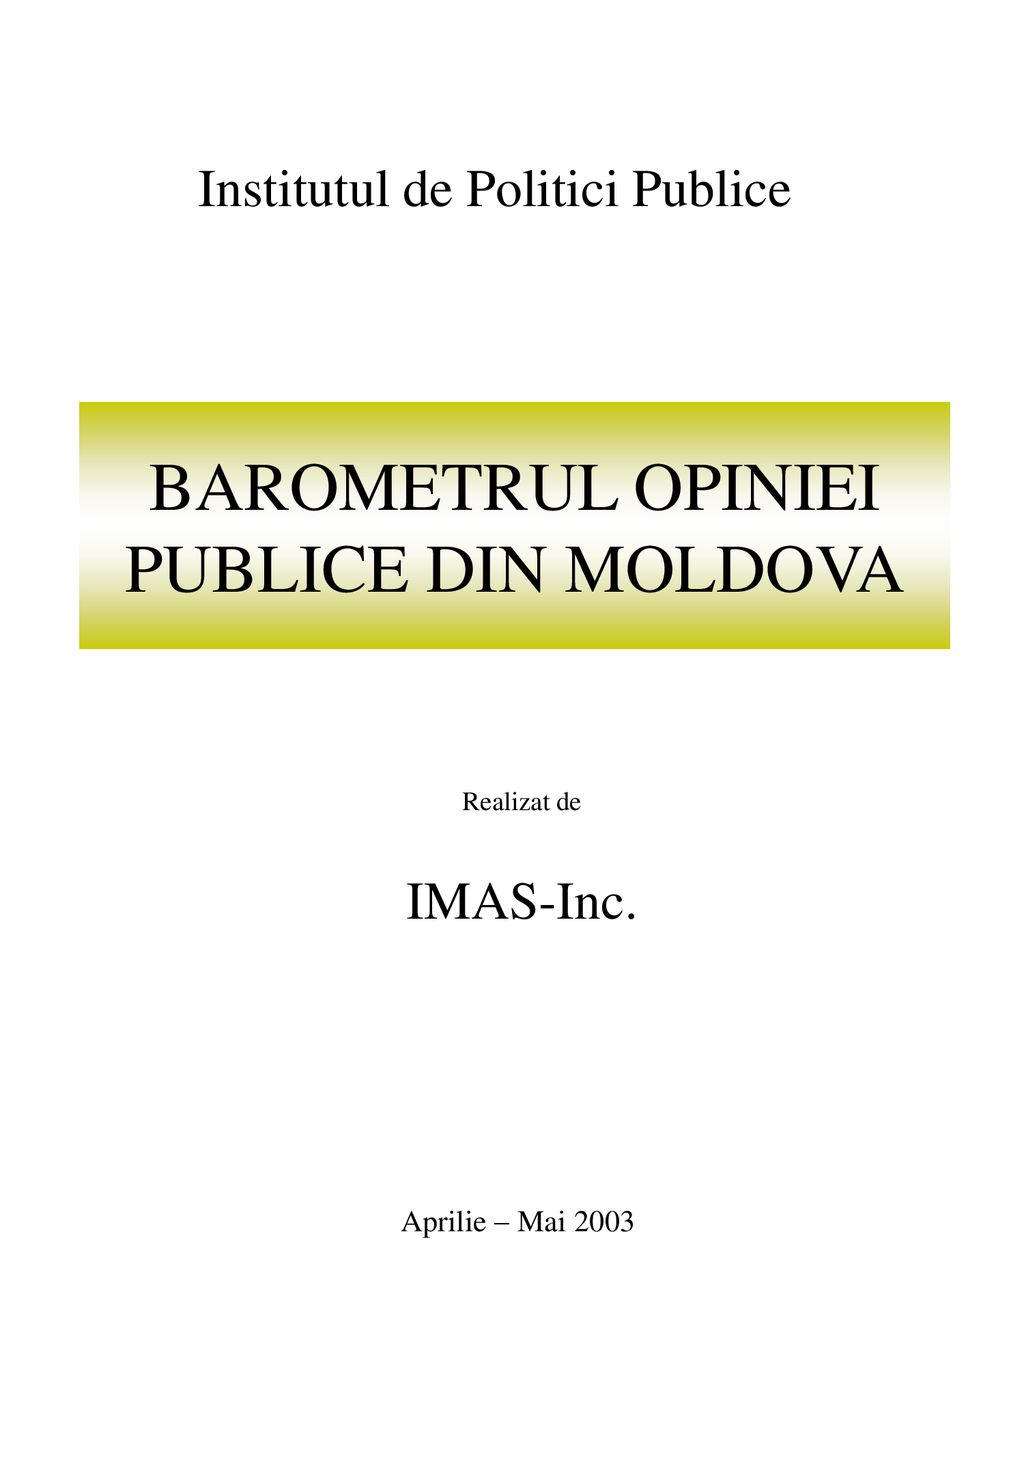 BAROMETRUL OPINIEI PUBLICE DIN MOLDOVA